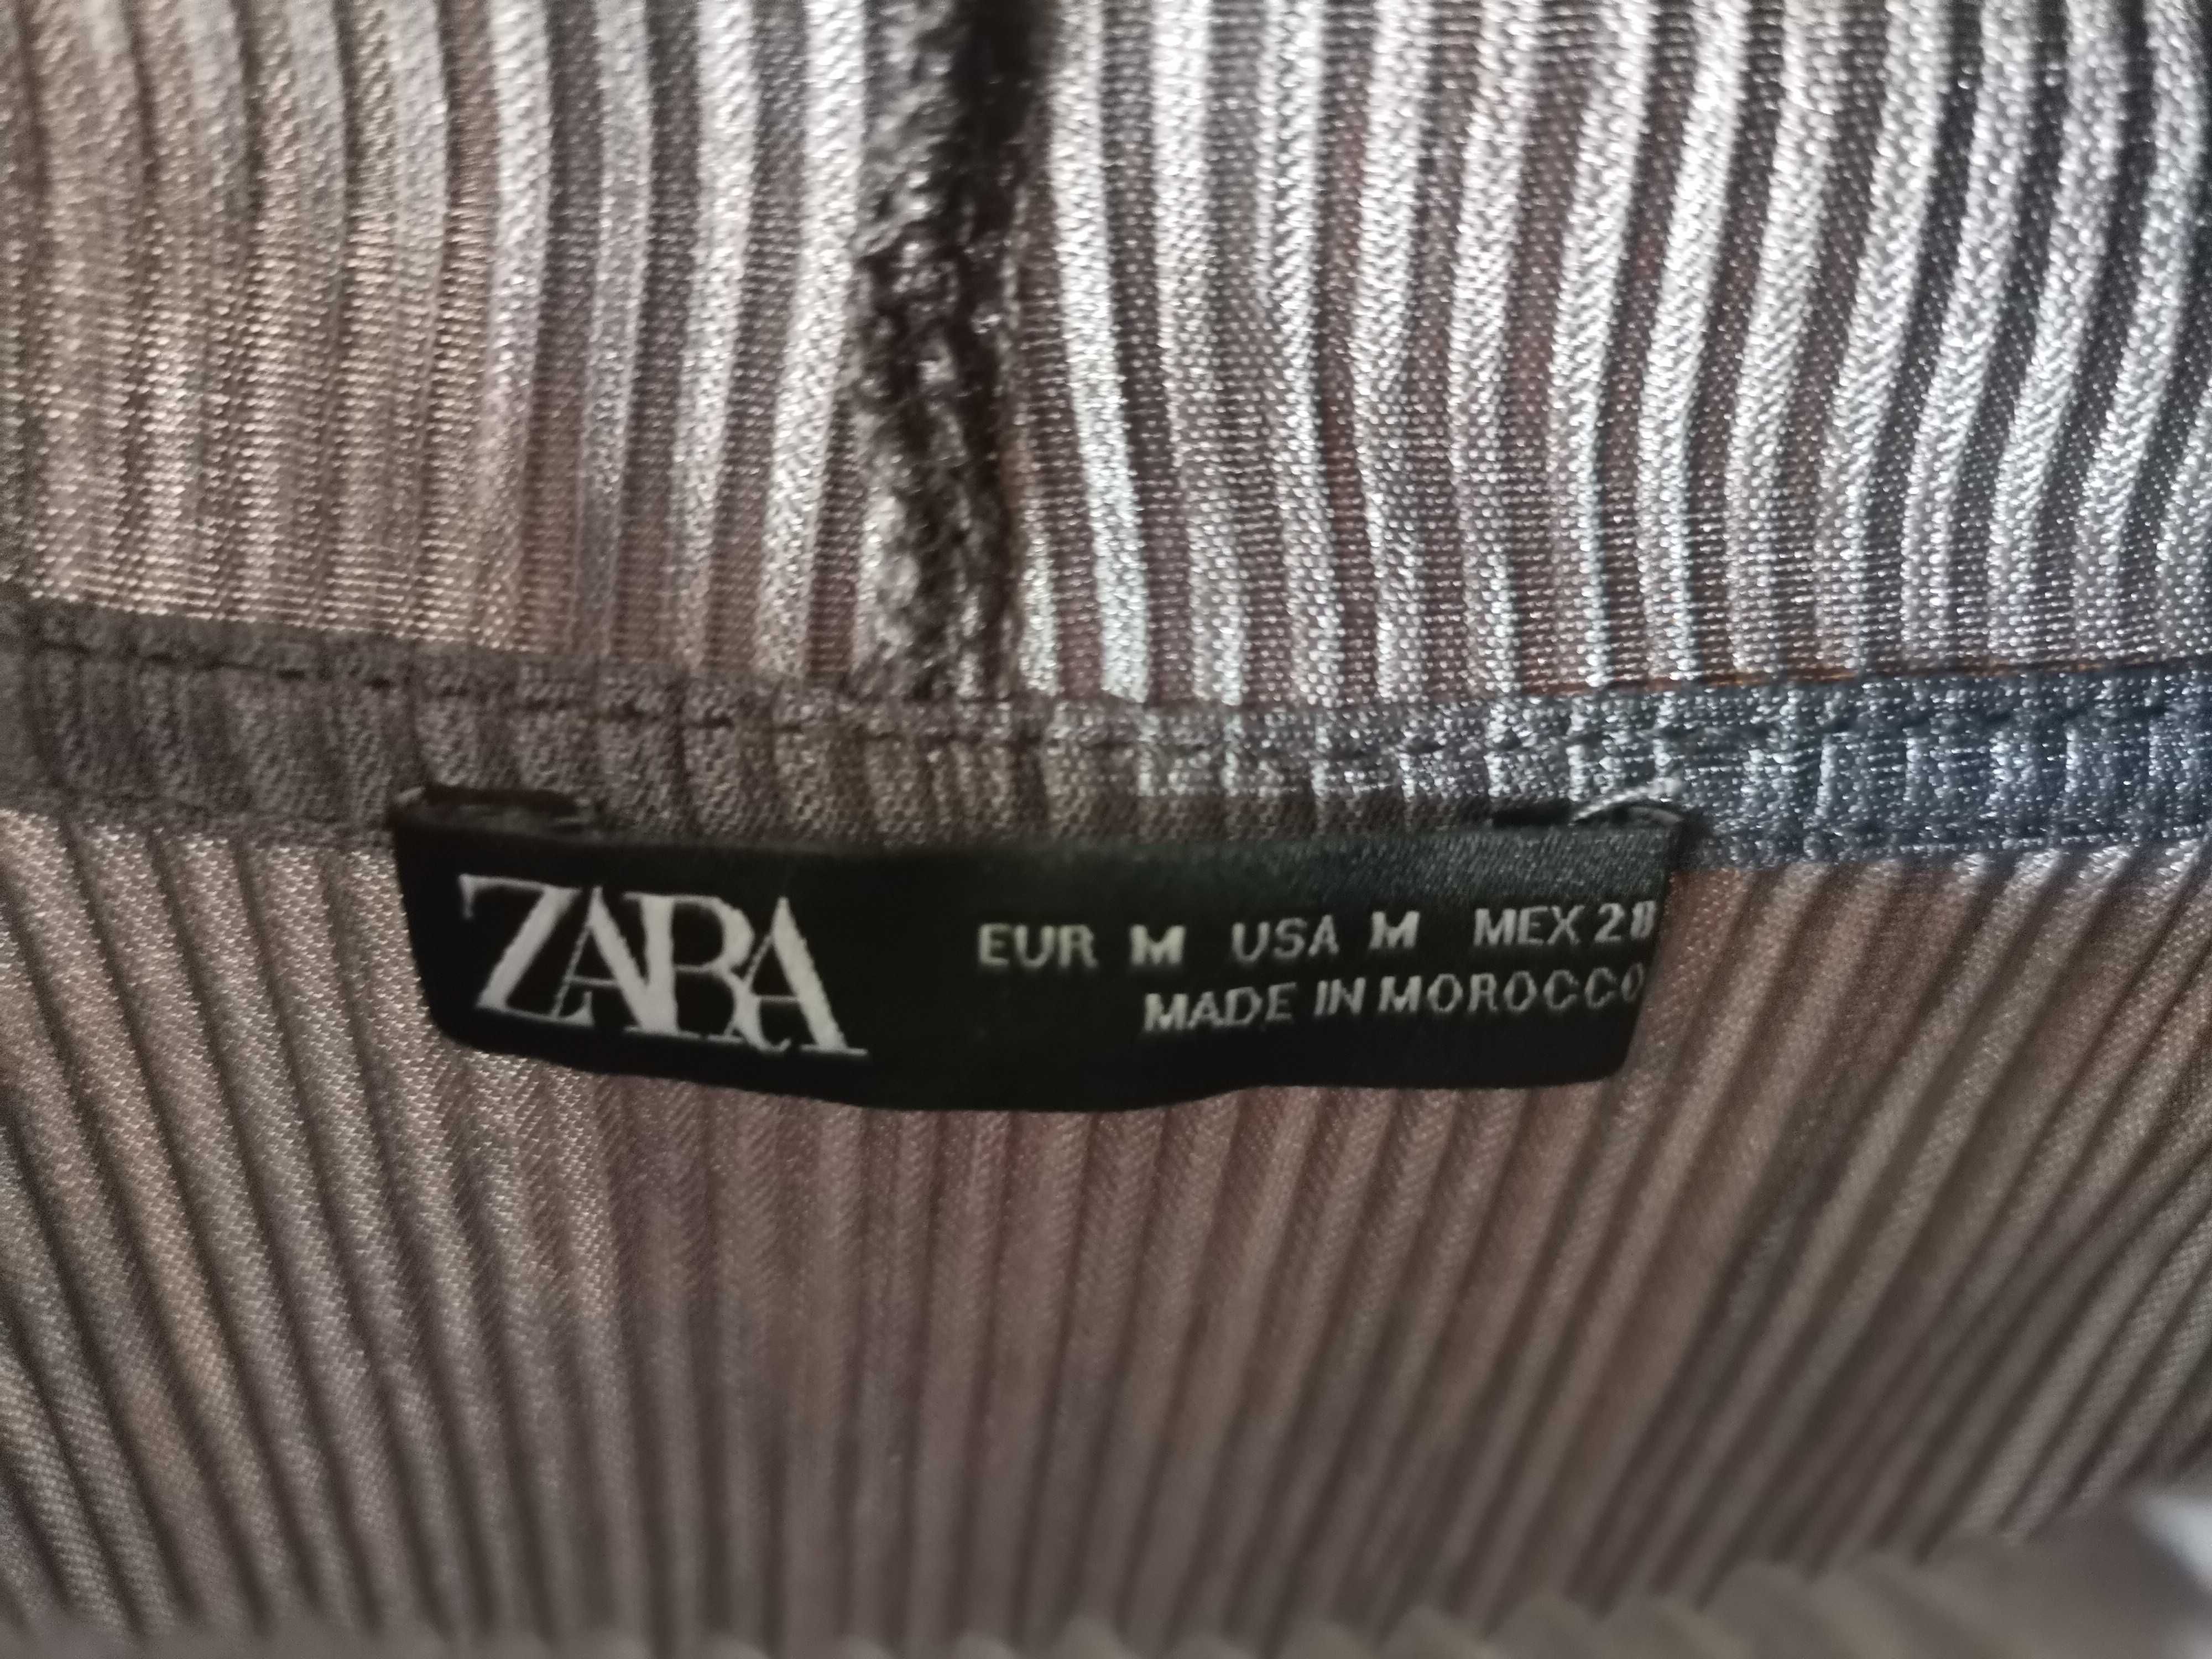 Camisola / t-shirt Zara cinza em tecido zigzag - tamanho M / 38 - nova